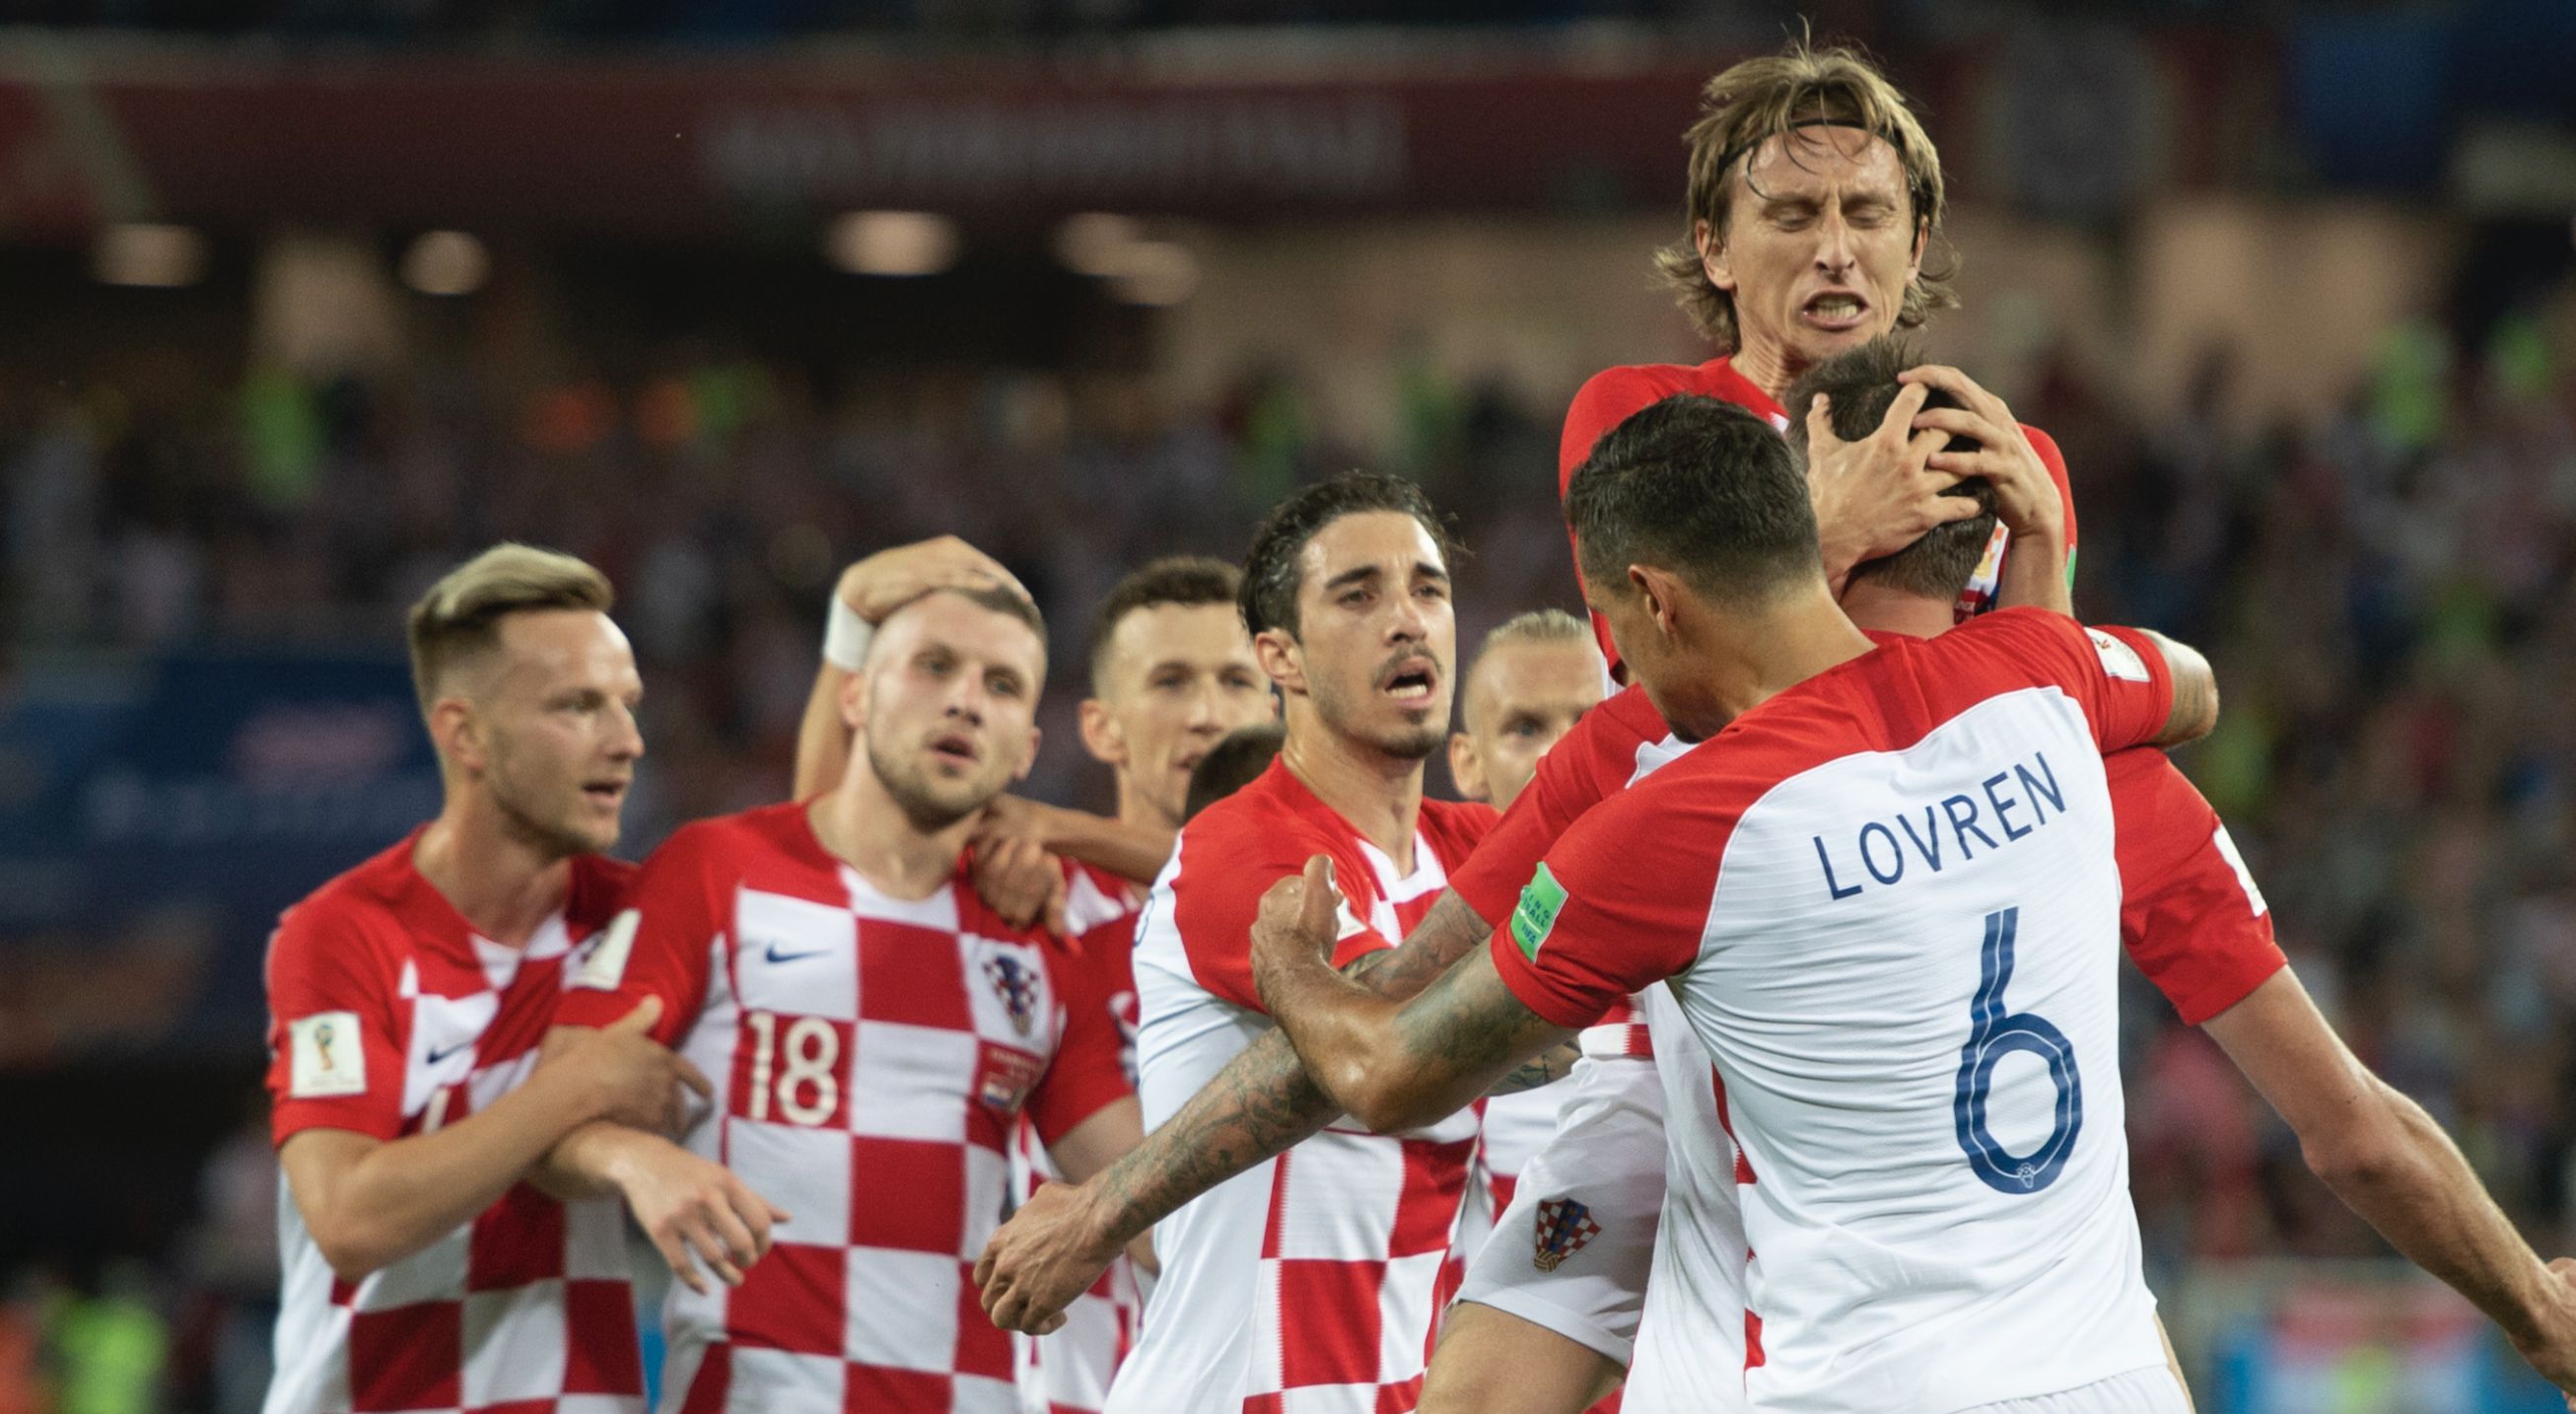 Αζερμπαϊτζάν - Κροατία Euro 2020 9/9/2019 προγνωστικά στοίχημα ανάλυση